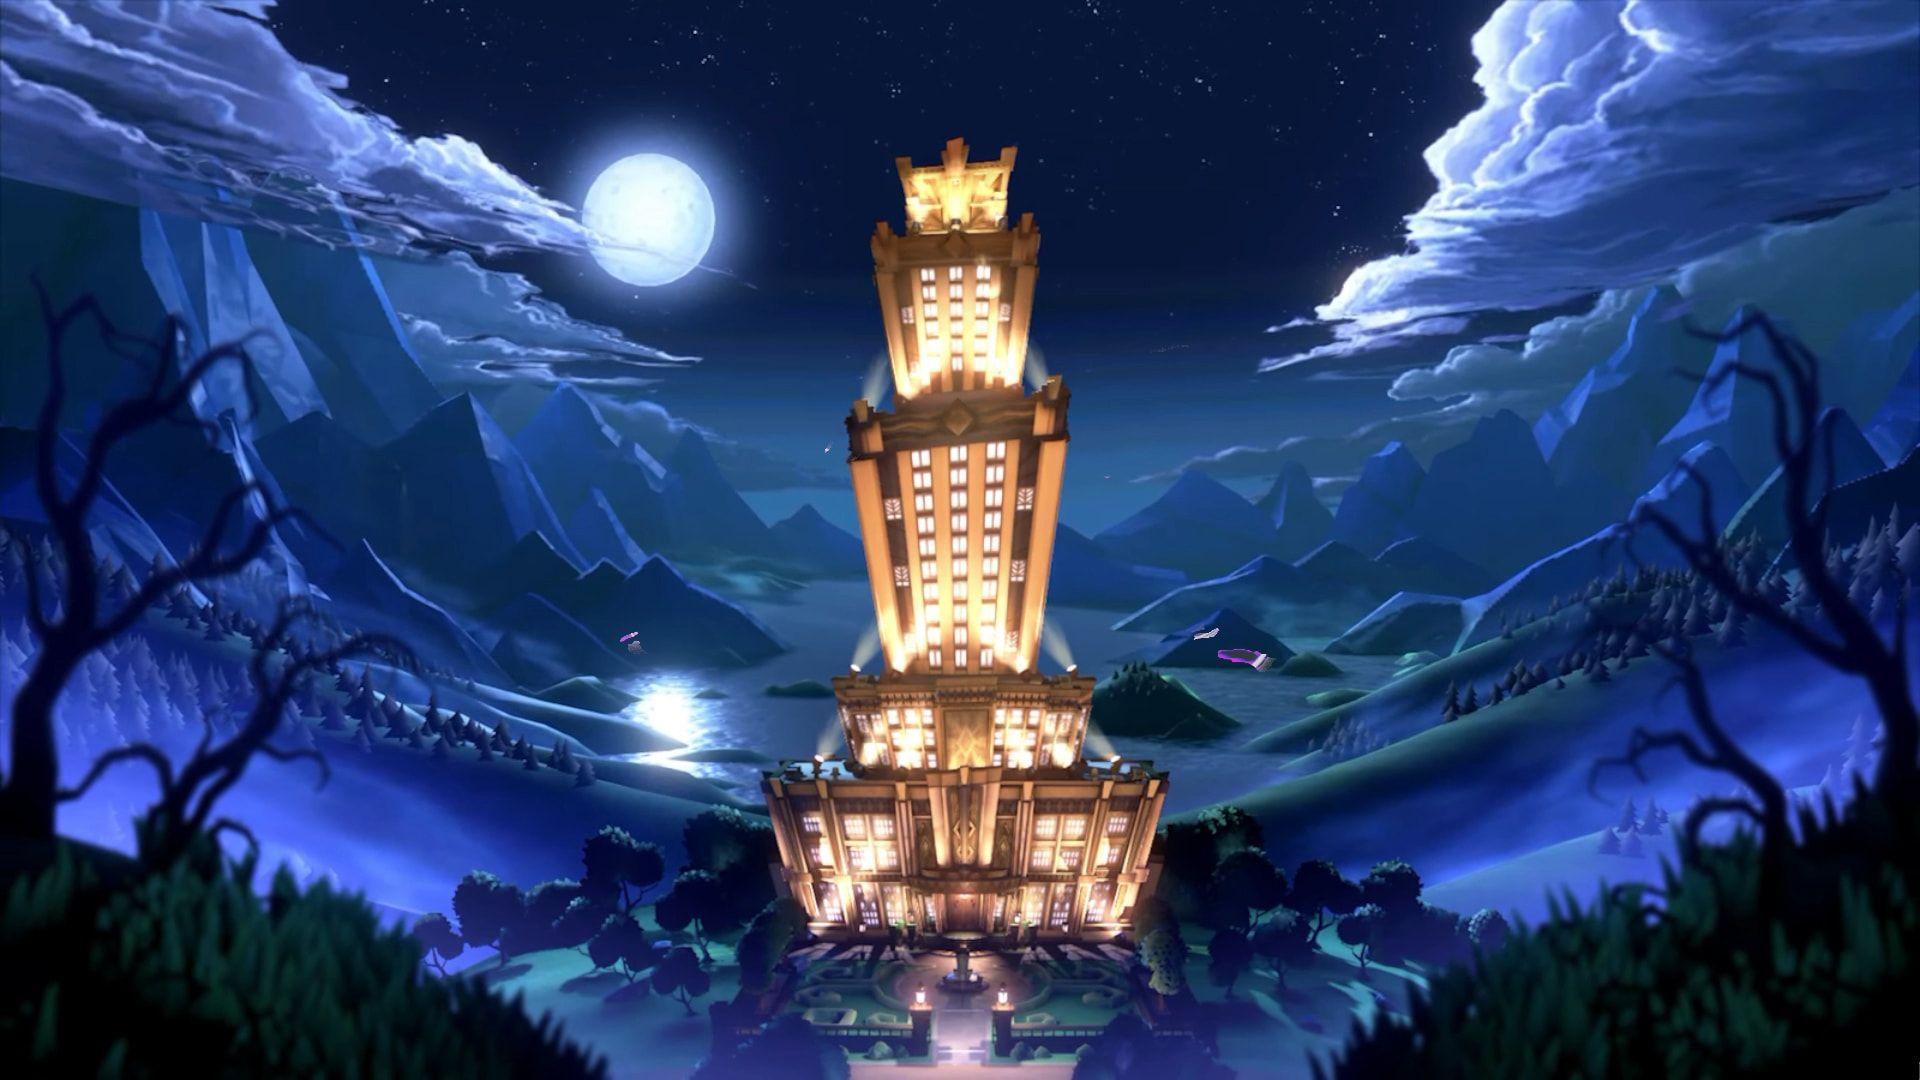 Luigi Mansion Wallpapers - Top Free Luigi Mansion Backgrounds